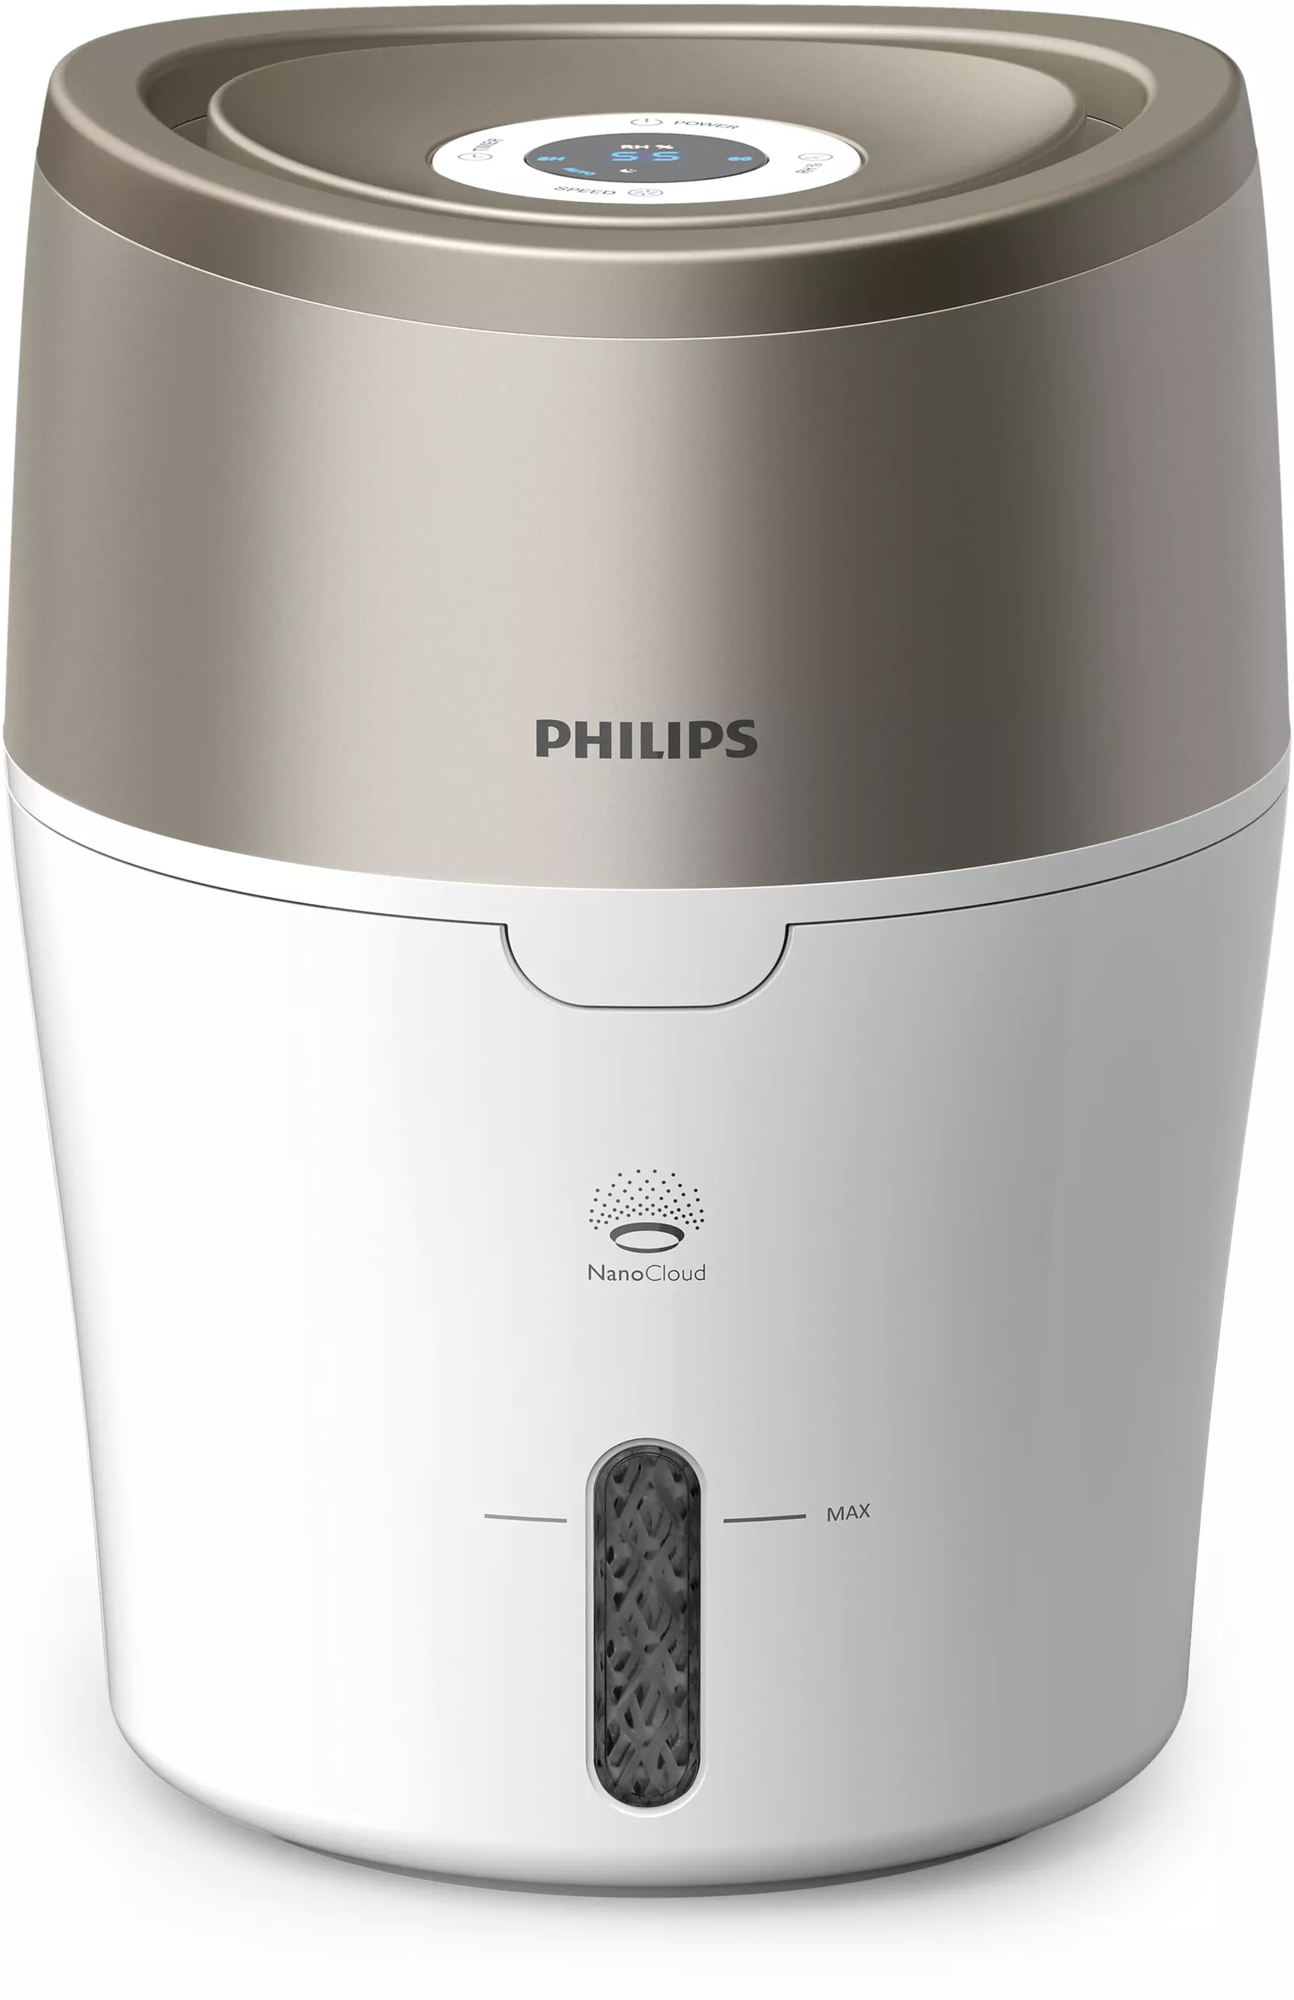 Увлажнитель воздуха с функцией ароматизации Philips HU4803/01, белый и металлик с розовым оттенком